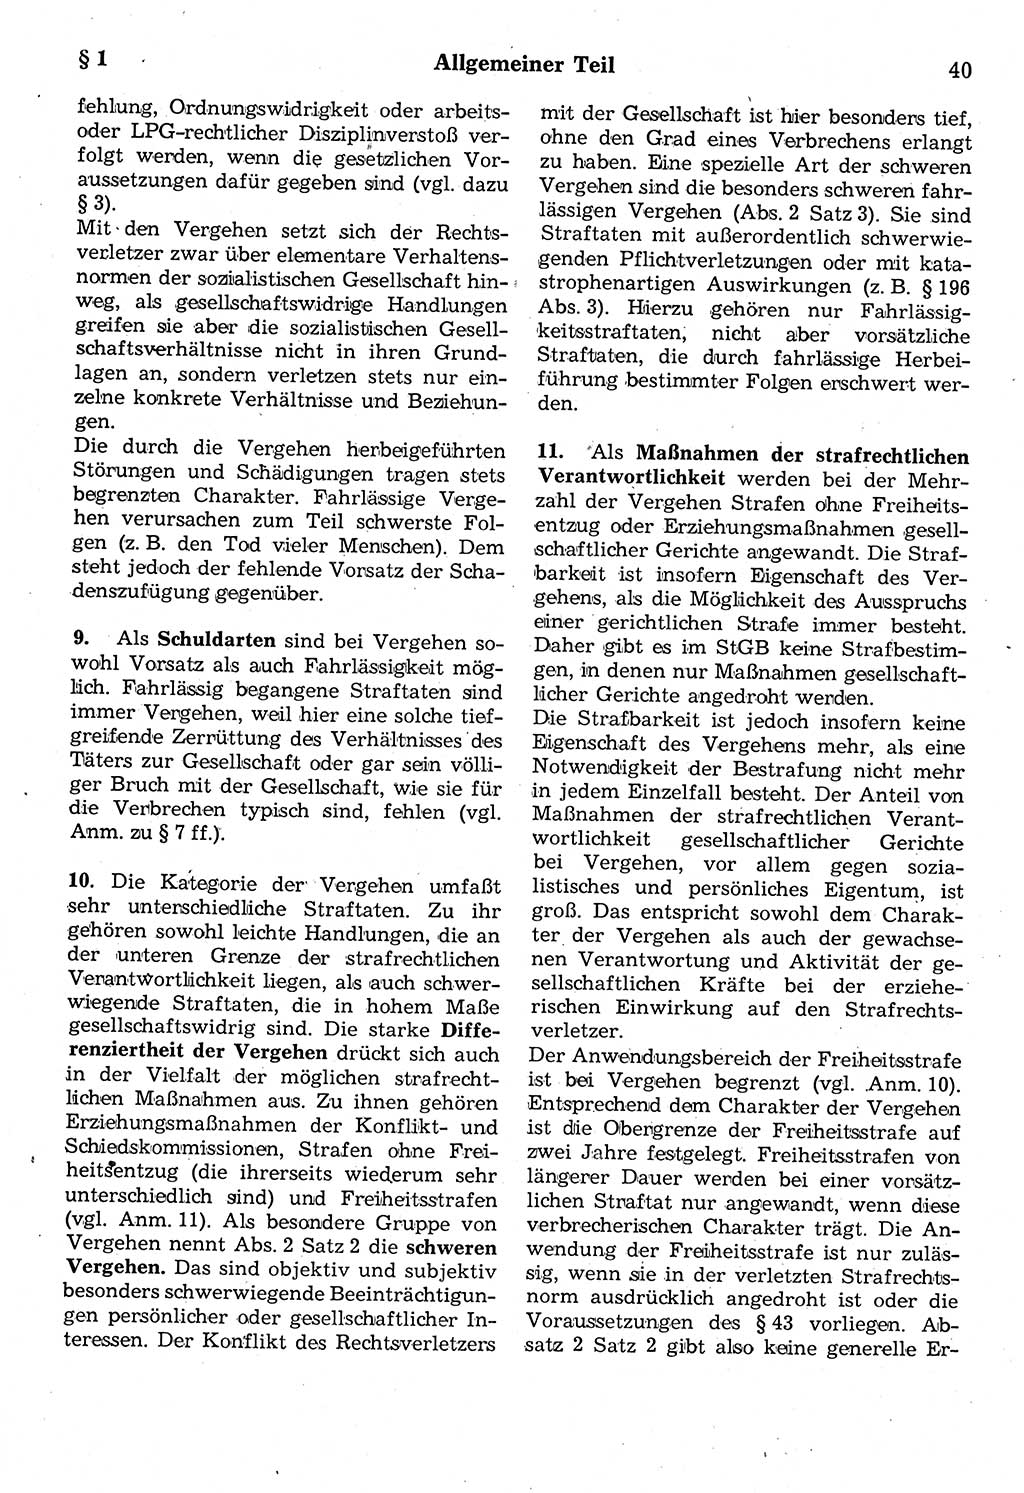 Strafrecht der Deutschen Demokratischen Republik (DDR), Kommentar zum Strafgesetzbuch (StGB) 1987, Seite 40 (Strafr. DDR Komm. StGB 1987, S. 40)